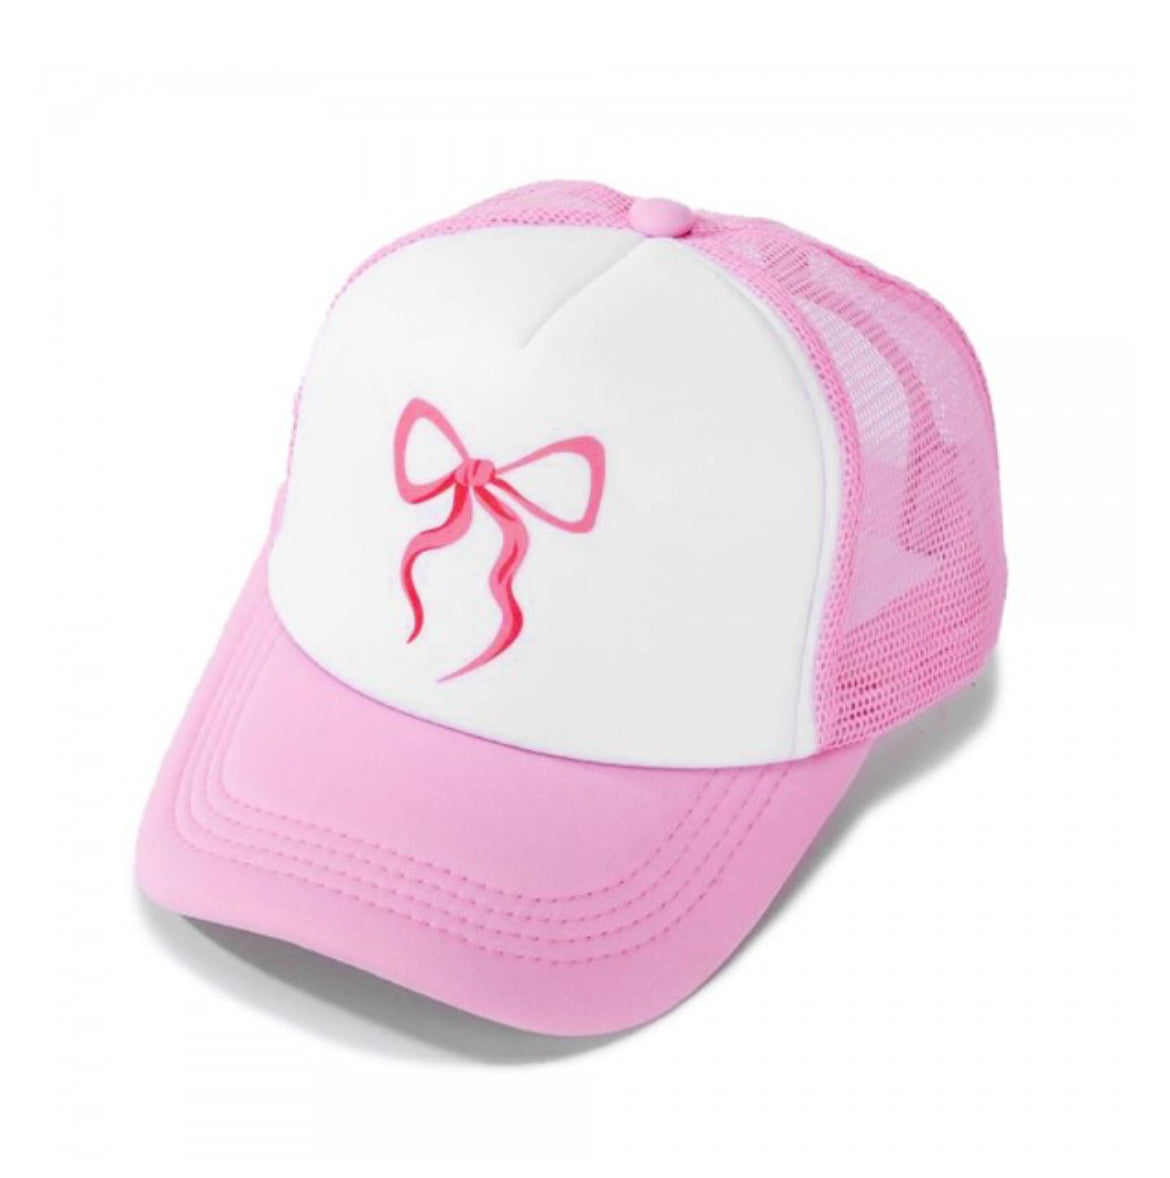 Pink Bow Trucker Baseball Cap